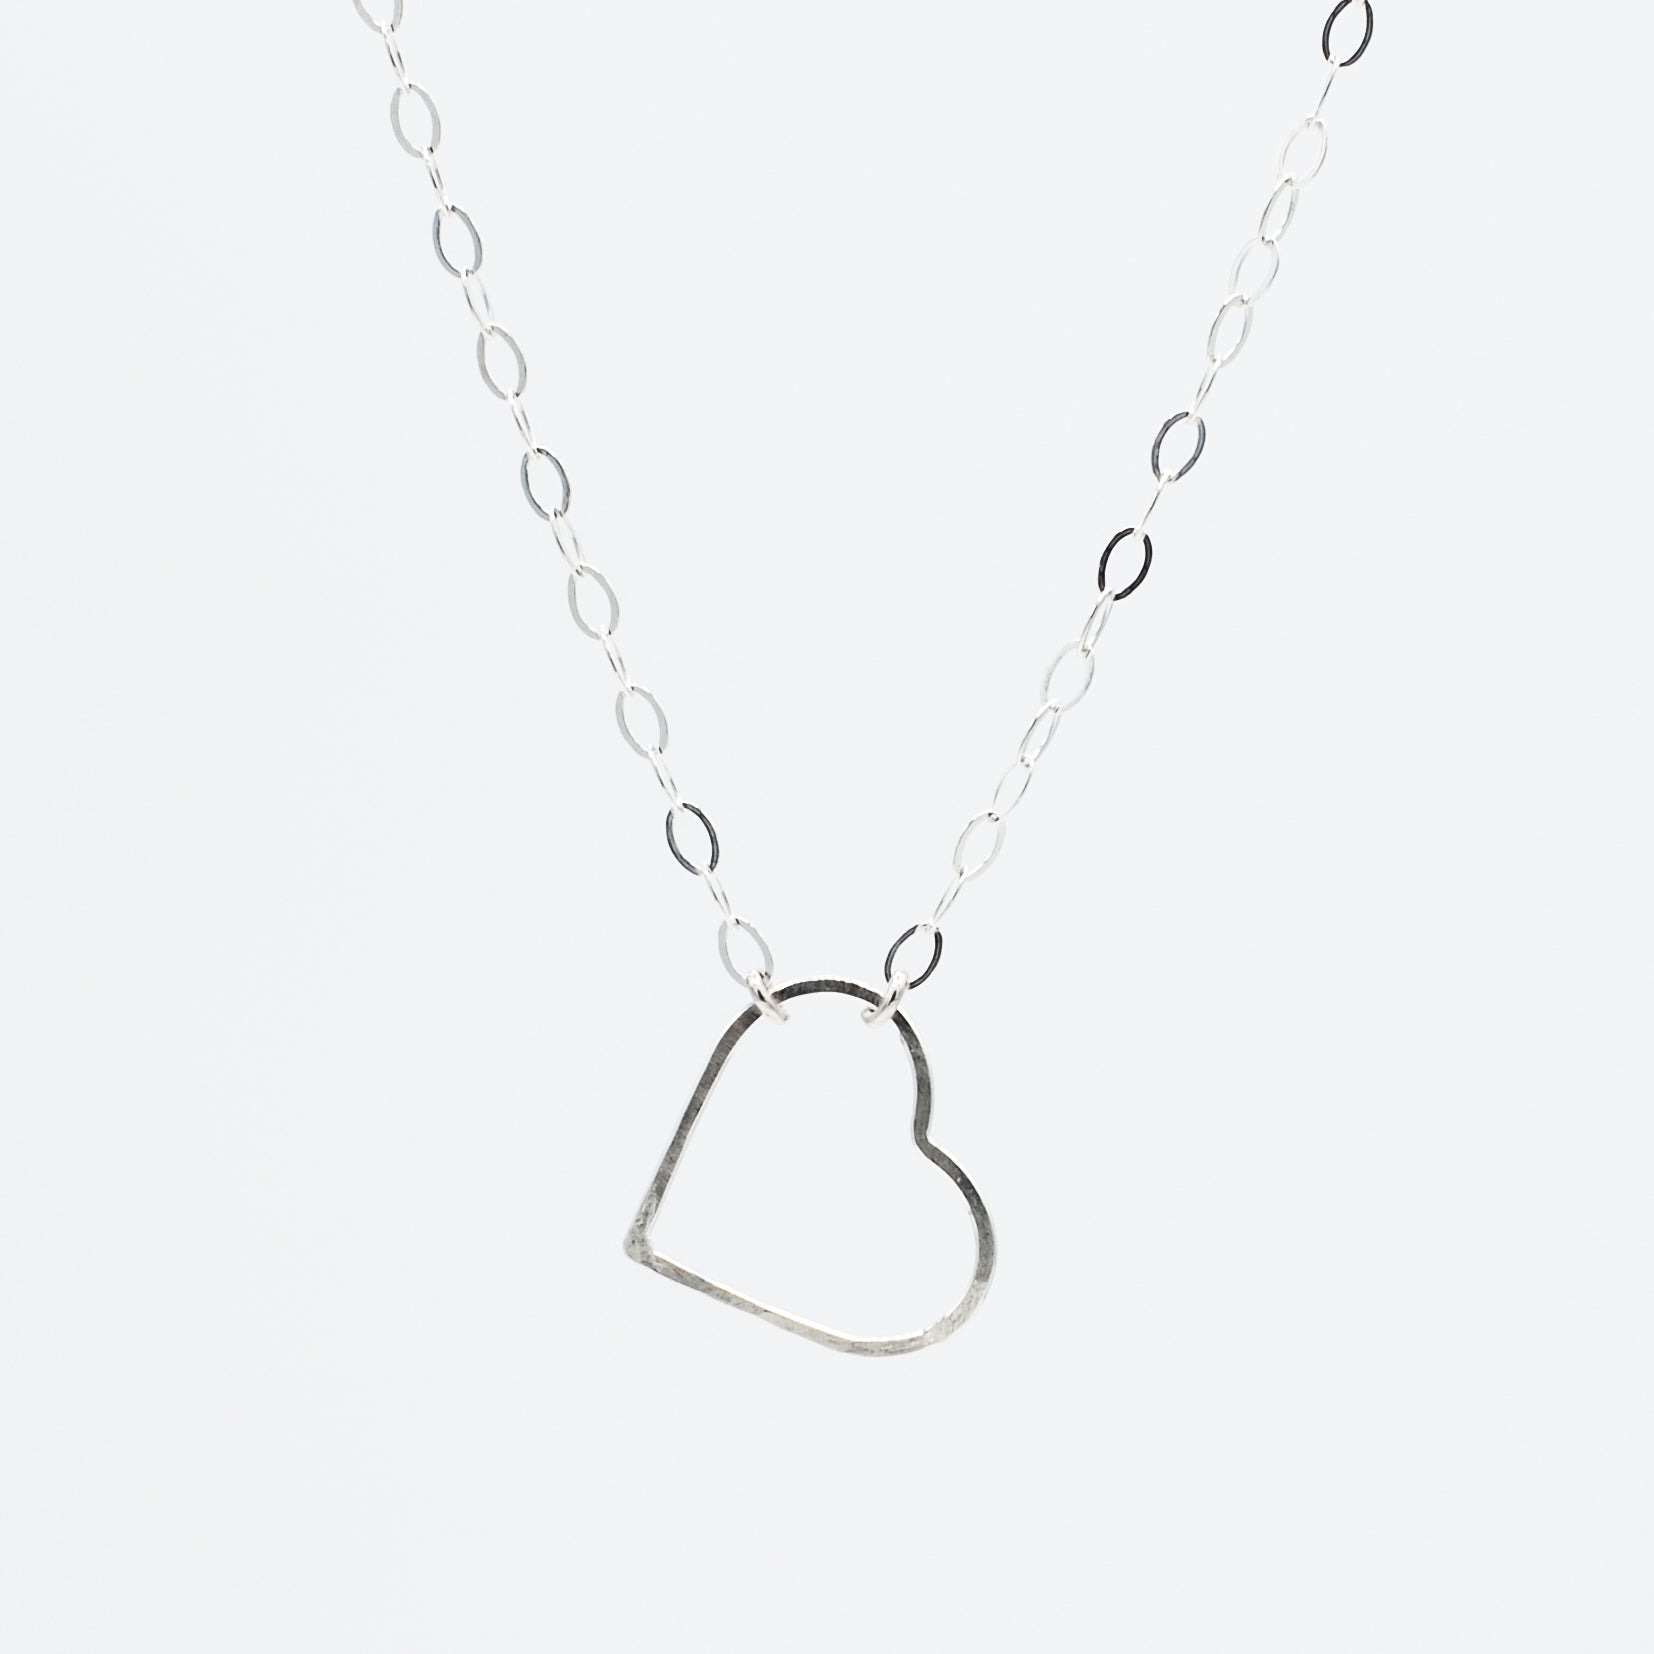 Heart Sterling Silver Necklace - Jewel Ya